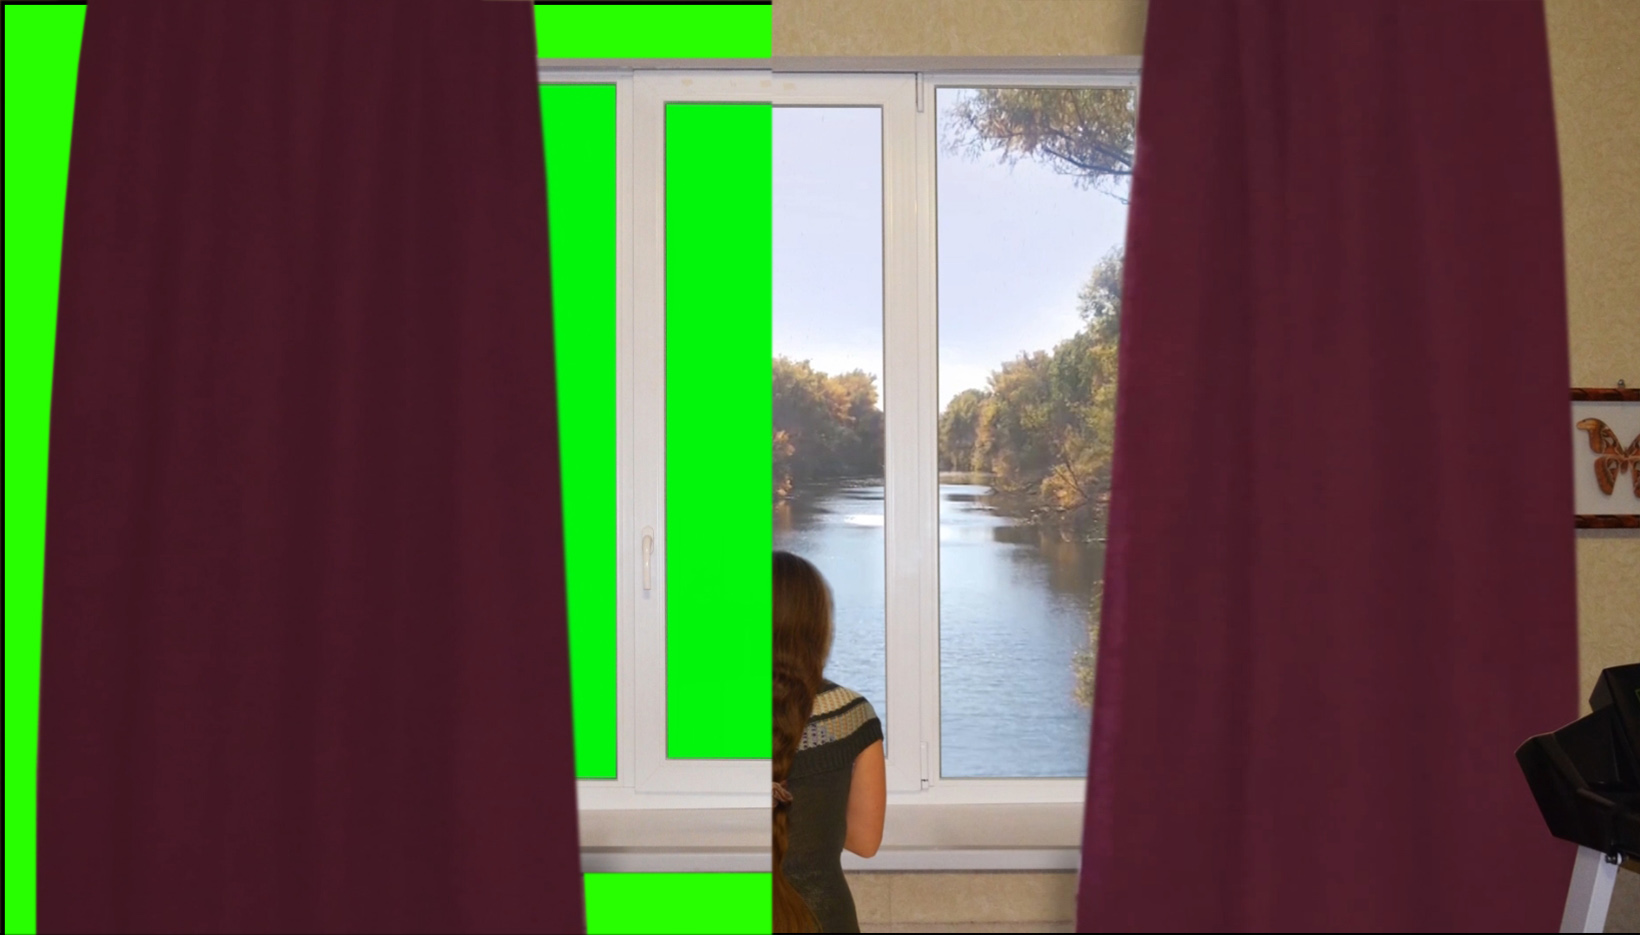 Футаж окна на зеленом фоне. Открывание штор на зеленом фоне. Хромакей. Green screen. Full HD 1080р.